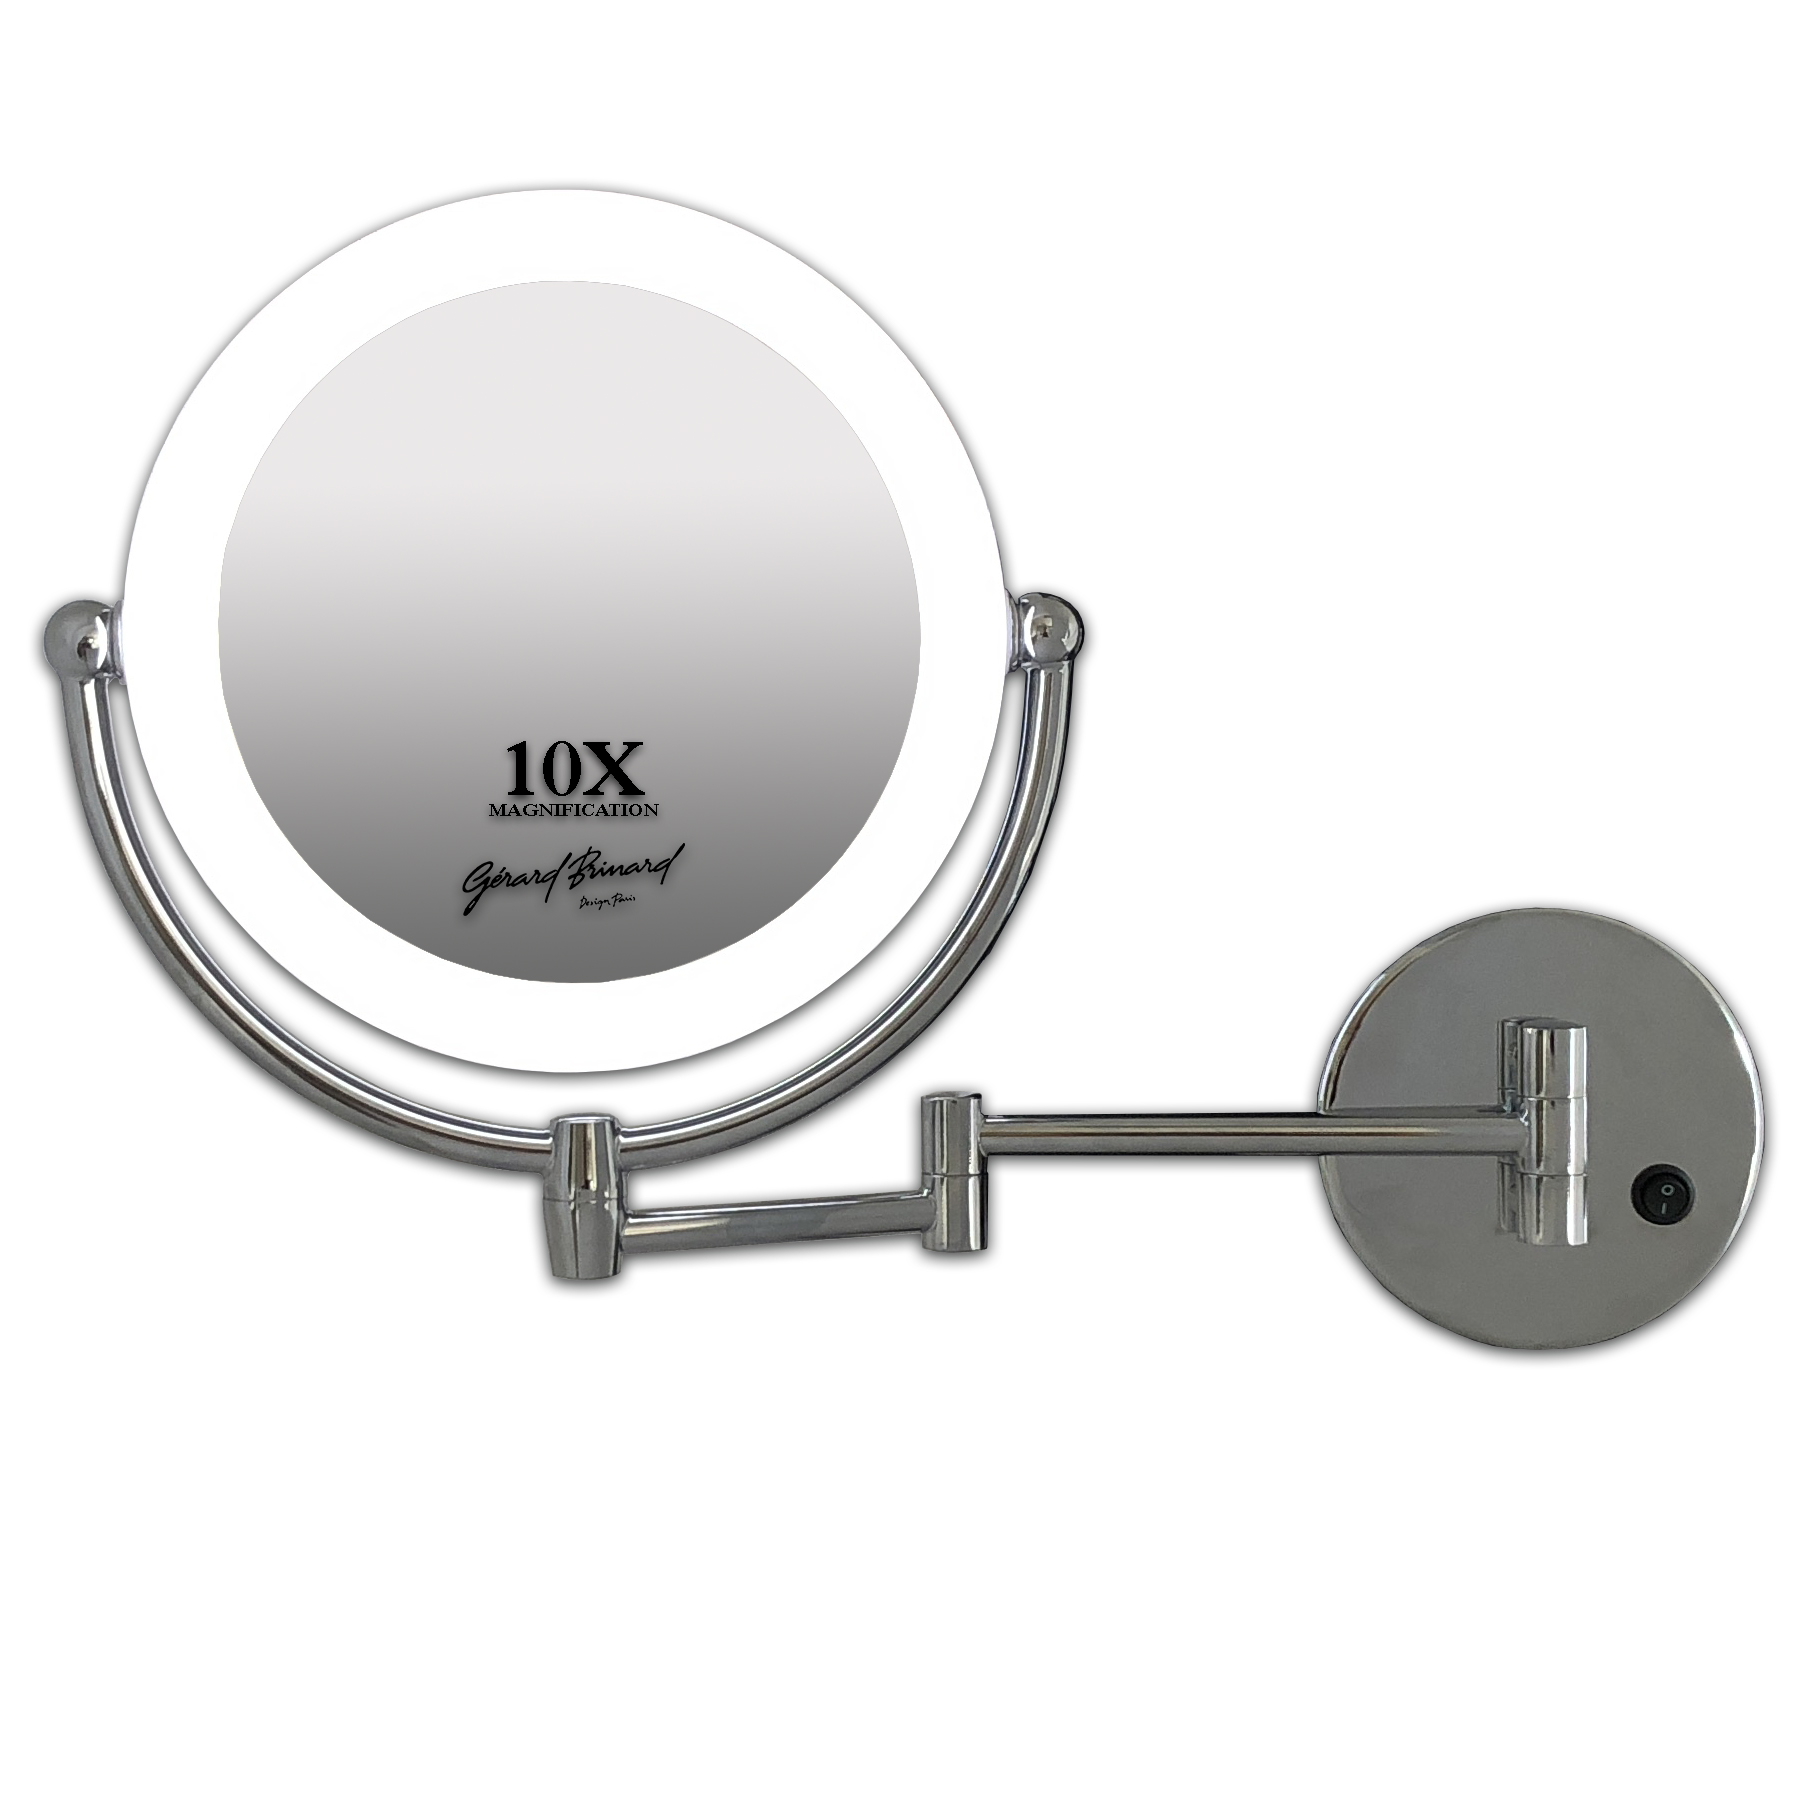 Metalen wand knik badkamer LED Spiegel 10x vergroting 22cm doorsnee, inculsief 4x AA batterijen en stroomkabel(micro USB). - Eurocompact | van den Brink B.V.